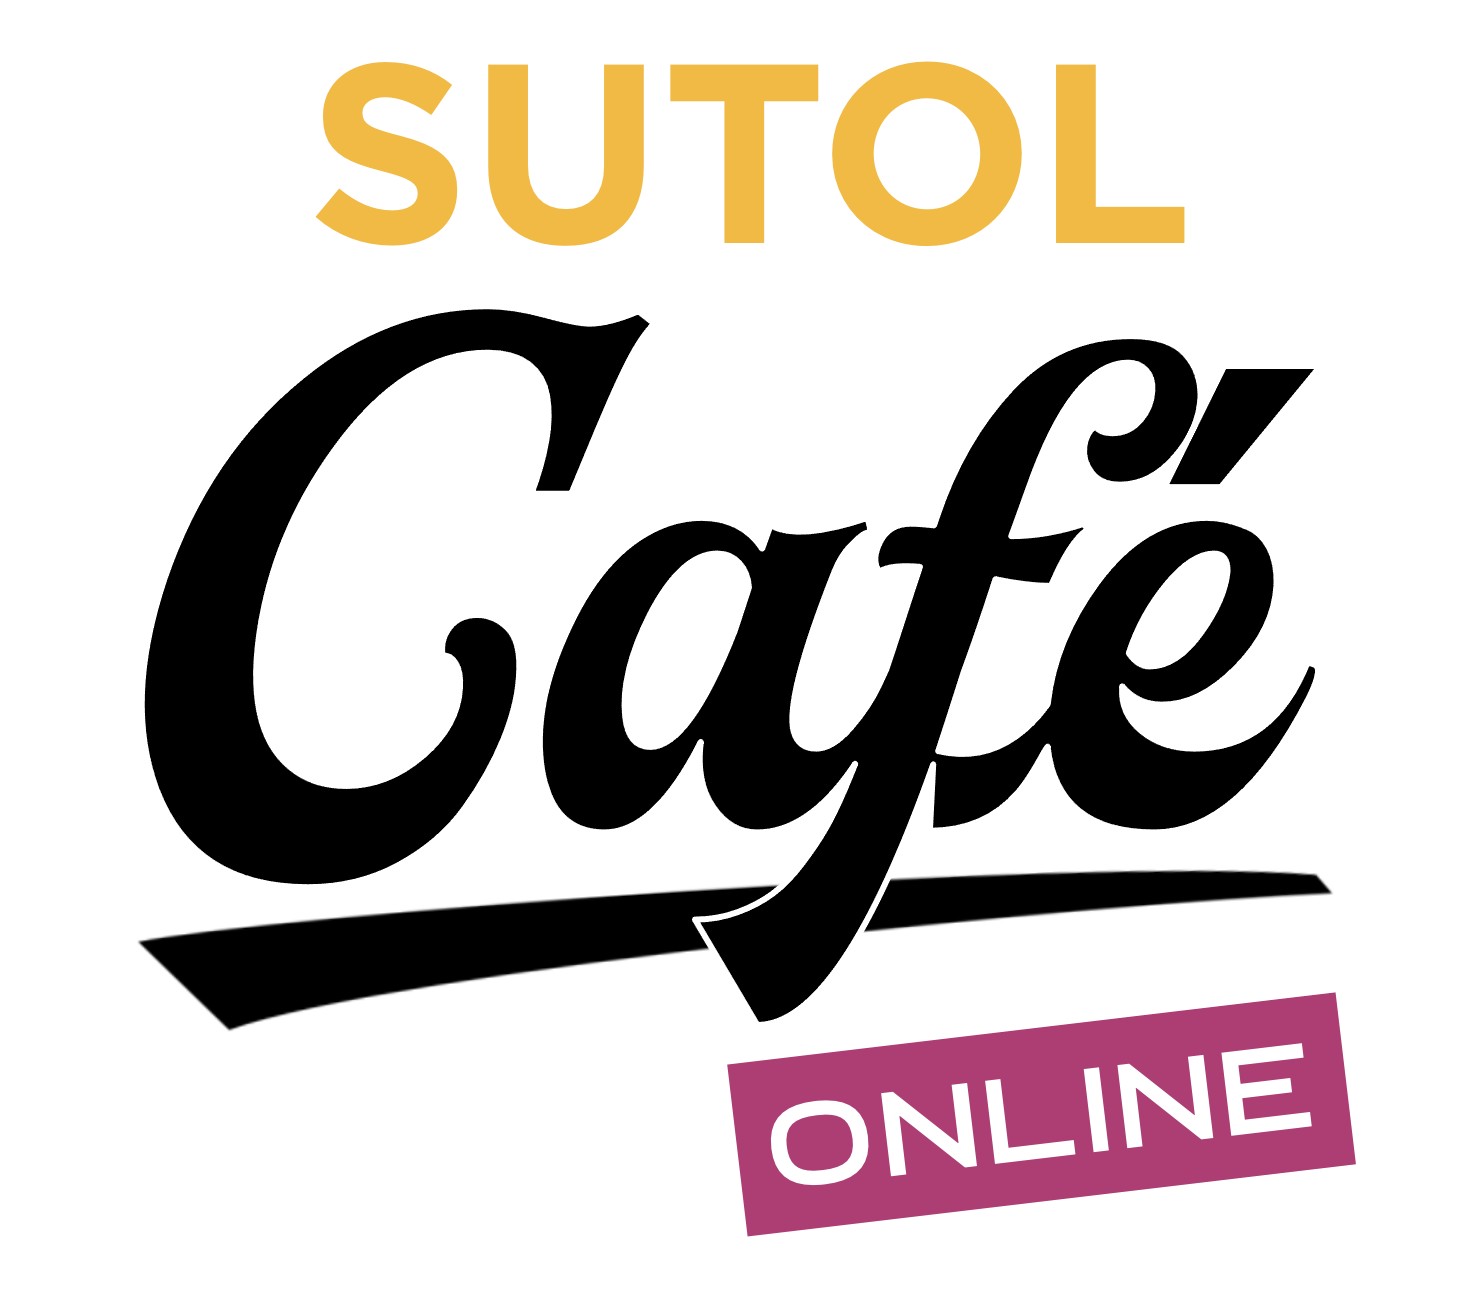 SUTOL Café Online 